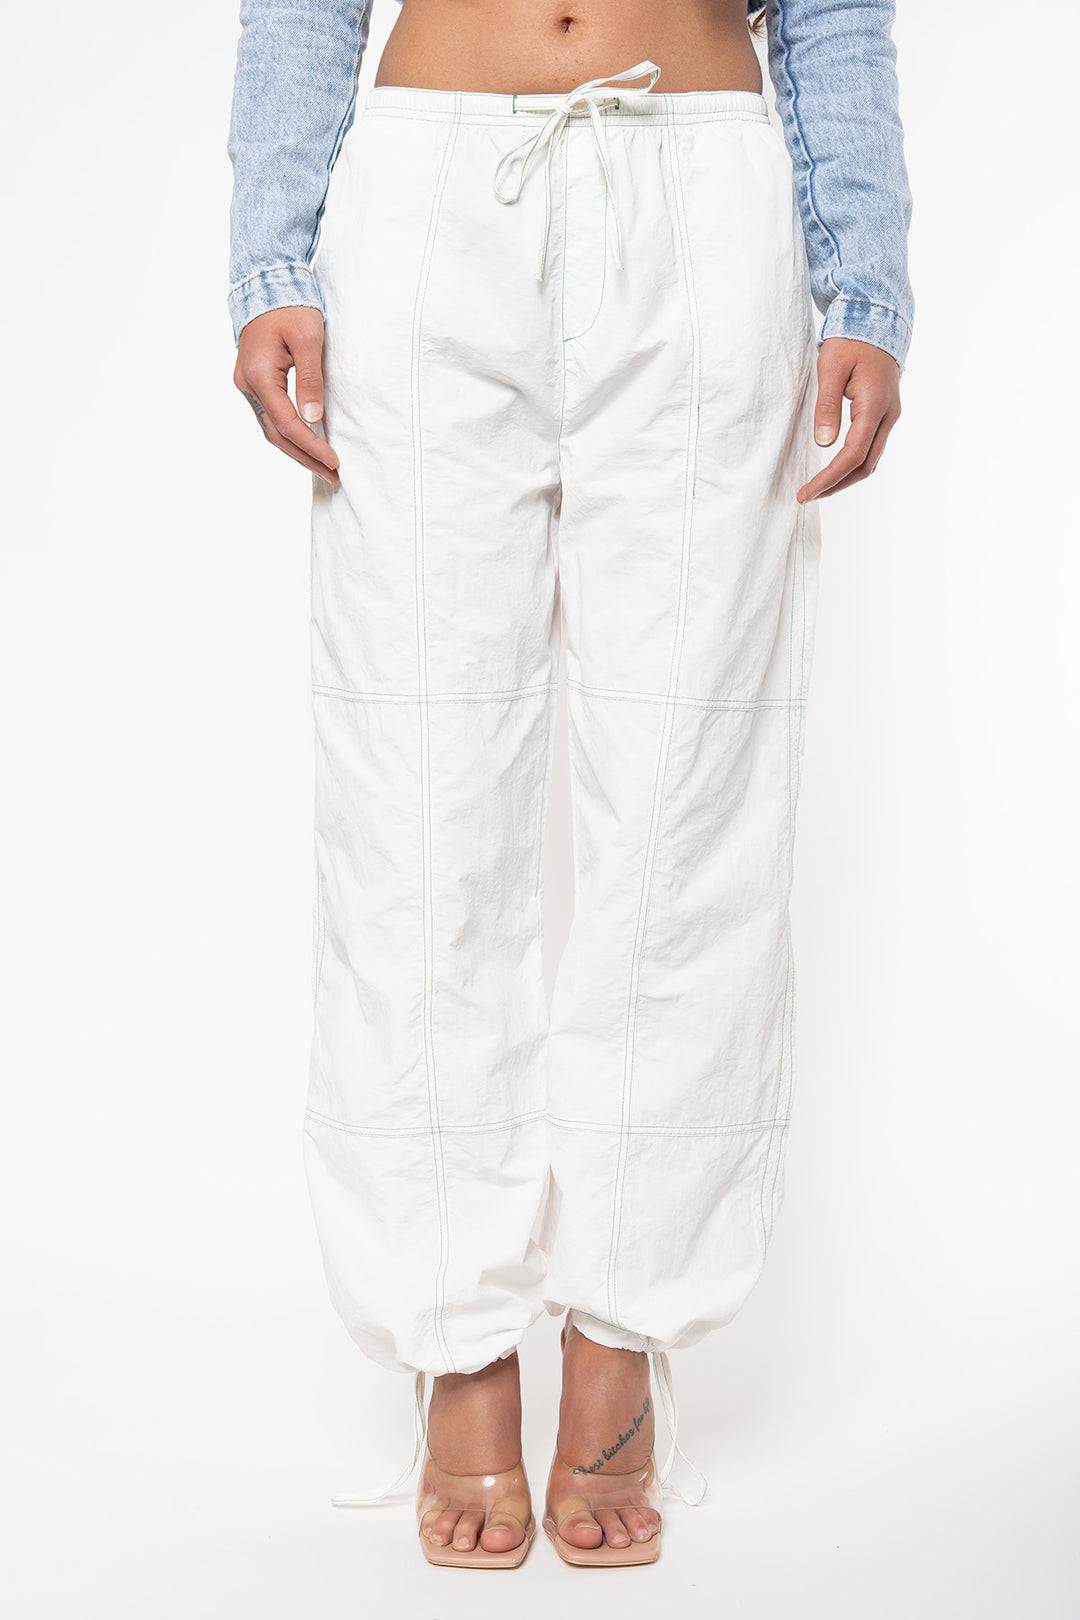 Carly Parachute Pants - White Pants Routines Fashion   